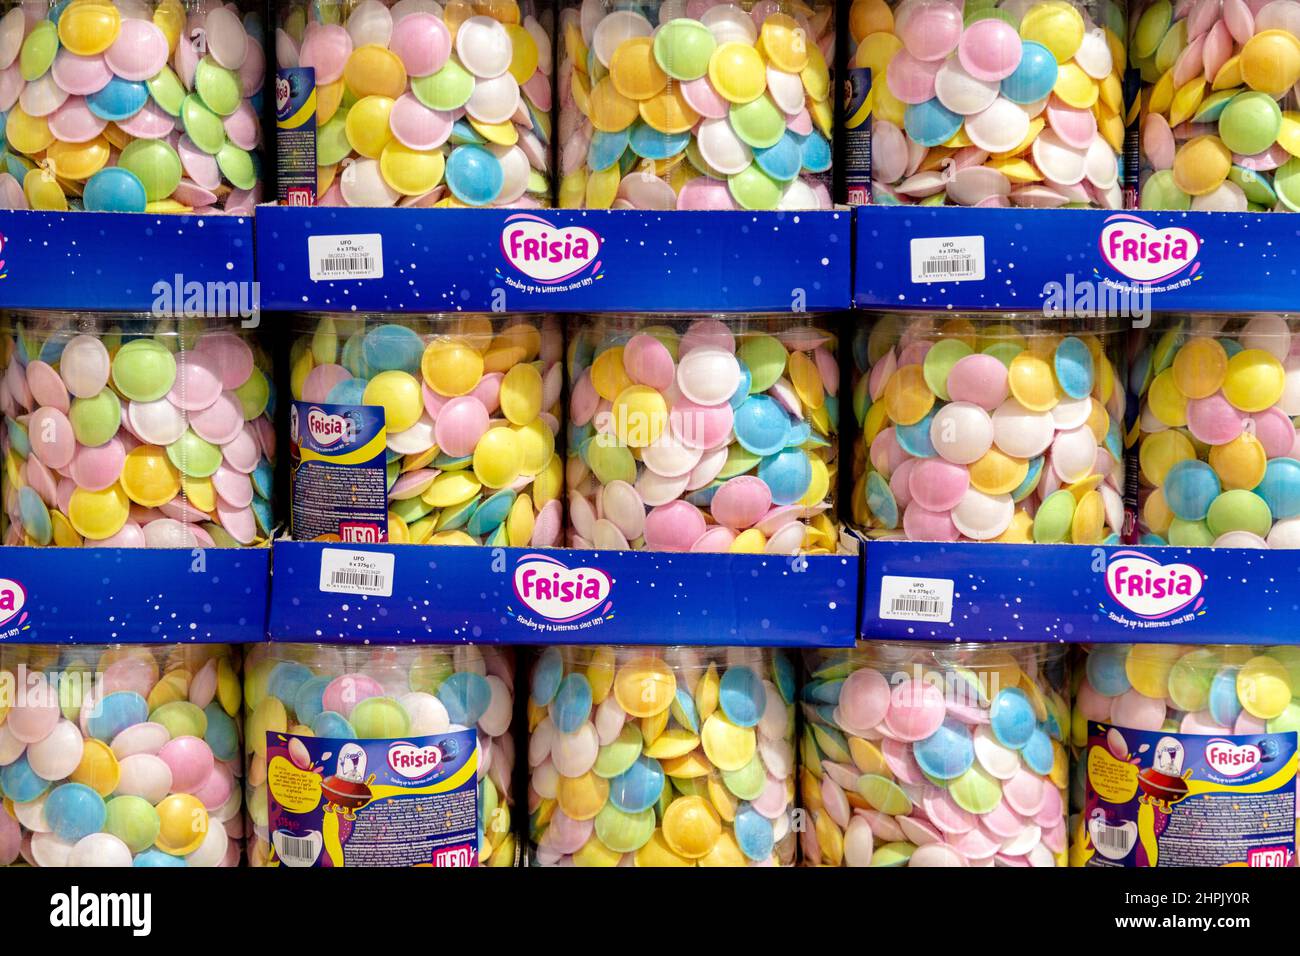 Confezionato di dolci di carta di riso pieni di saurceri volanti in un supermercato Foto Stock